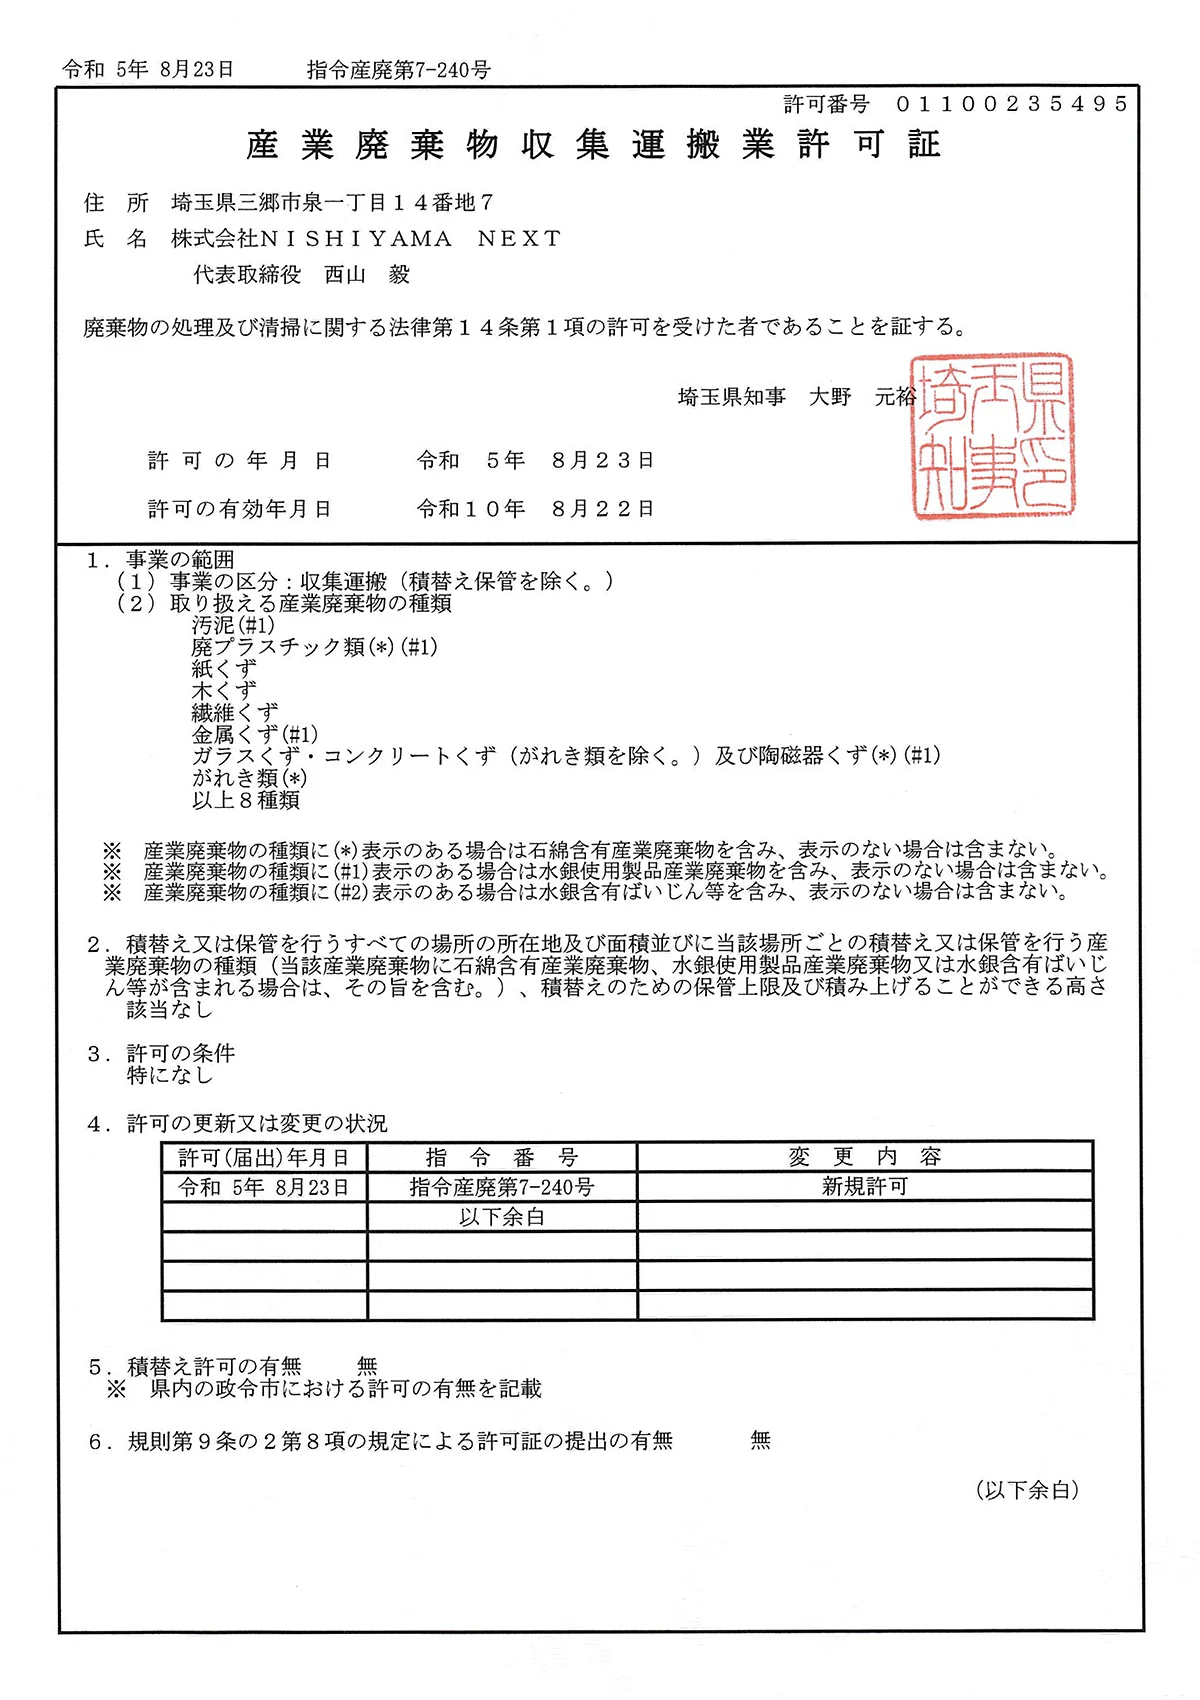 埼玉県 - 産業廃棄物収集運搬許可証